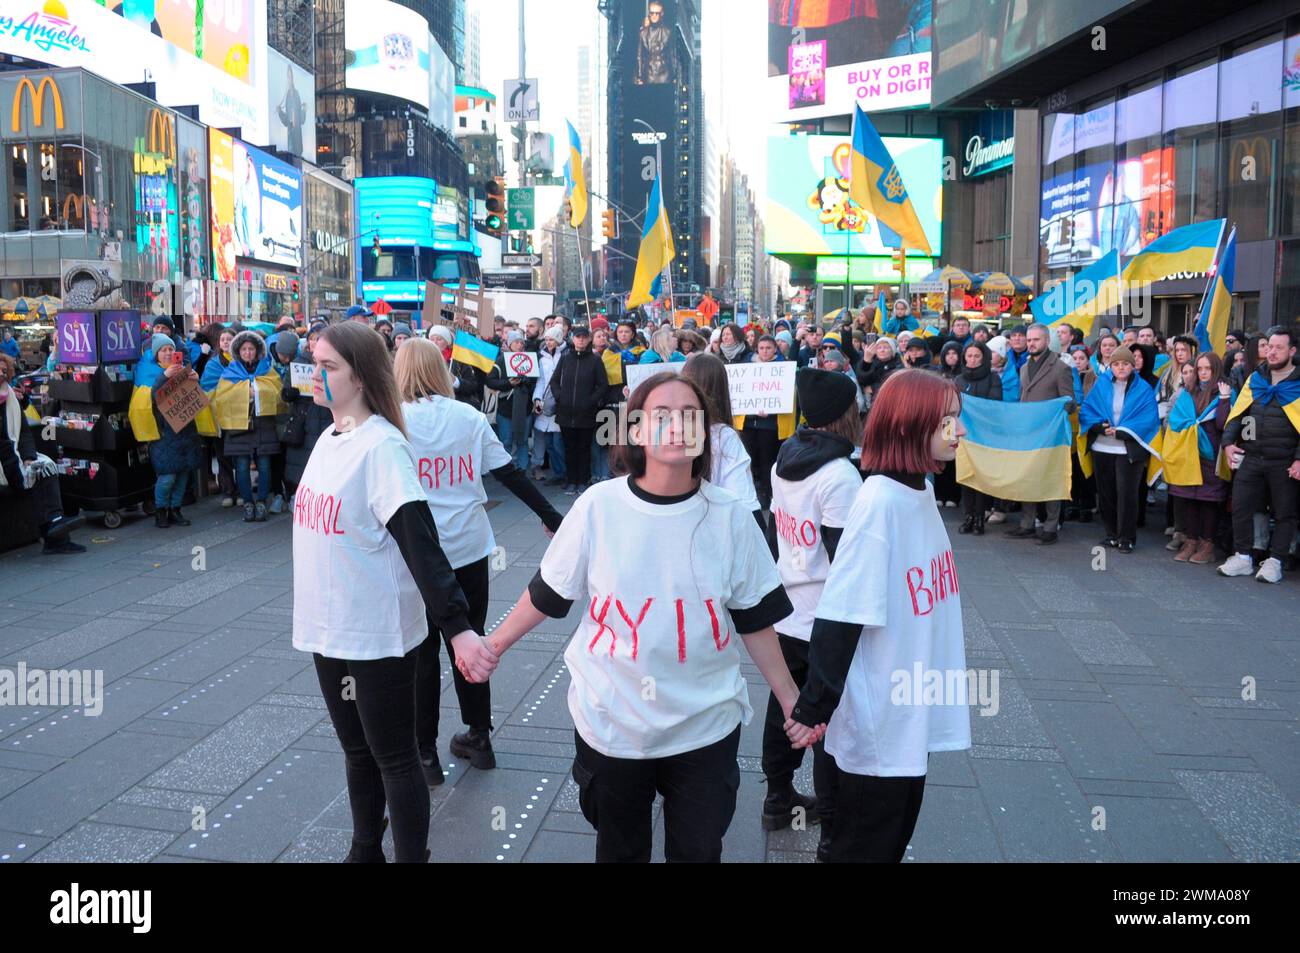 Des manifestants pro-Ukraine, portant chacun un t-shirt avec le nom d'une ville ukrainienne écrit dessus, se rassemblent à Times Square. Des manifestants se sont rassemblés à Manhattan, New York City, à l'occasion des deux ans de l'invasion russe de l'Ukraine. Les manifestants ont condamné l'invasion et se sont opposés au président russe Vladimir Poutine. Le week-end dernier, les forces russes ont capturé la ville ukrainienne orientale d'Avdiivka située sur la ligne de front. La perte de la ville survient alors qu'un paquet d'aide de 60 milliards de dollars pour l'Ukraine de la part des États-Unis a été bloqué à la suite de désaccords au Congrès. Président ukrainien, Volodymyr Zelen Banque D'Images